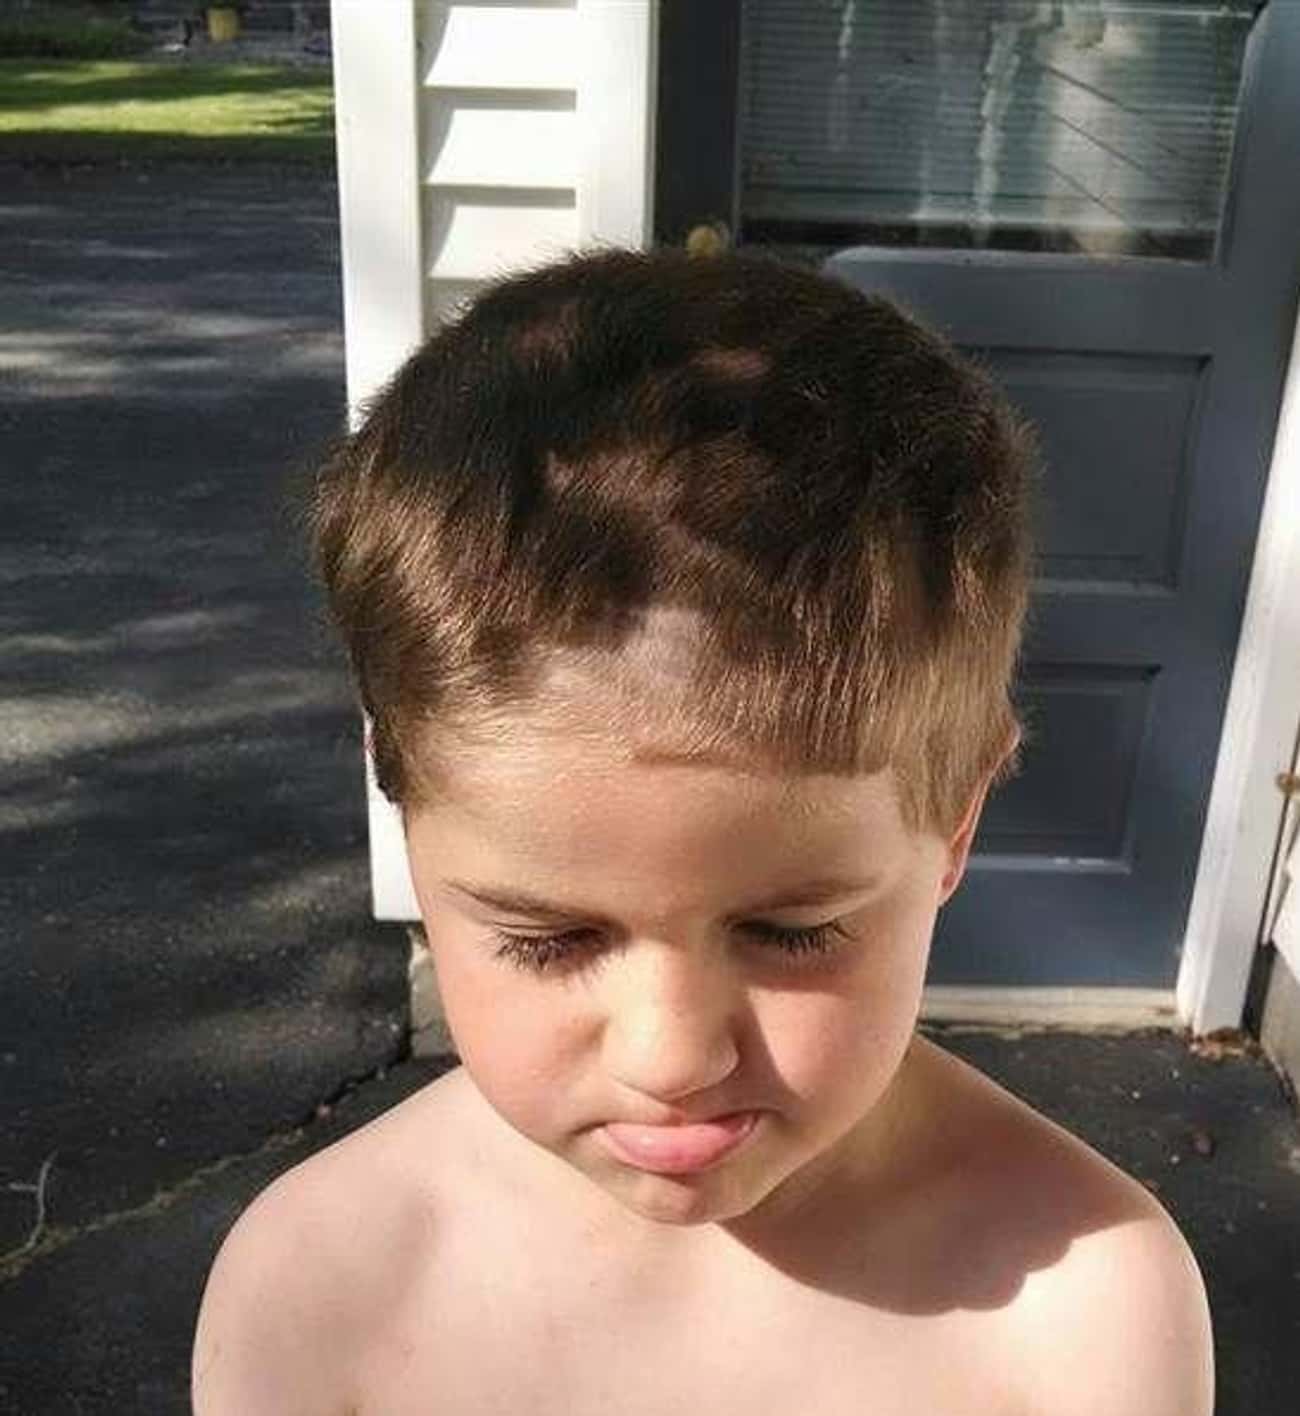 Дети сами подстриглись